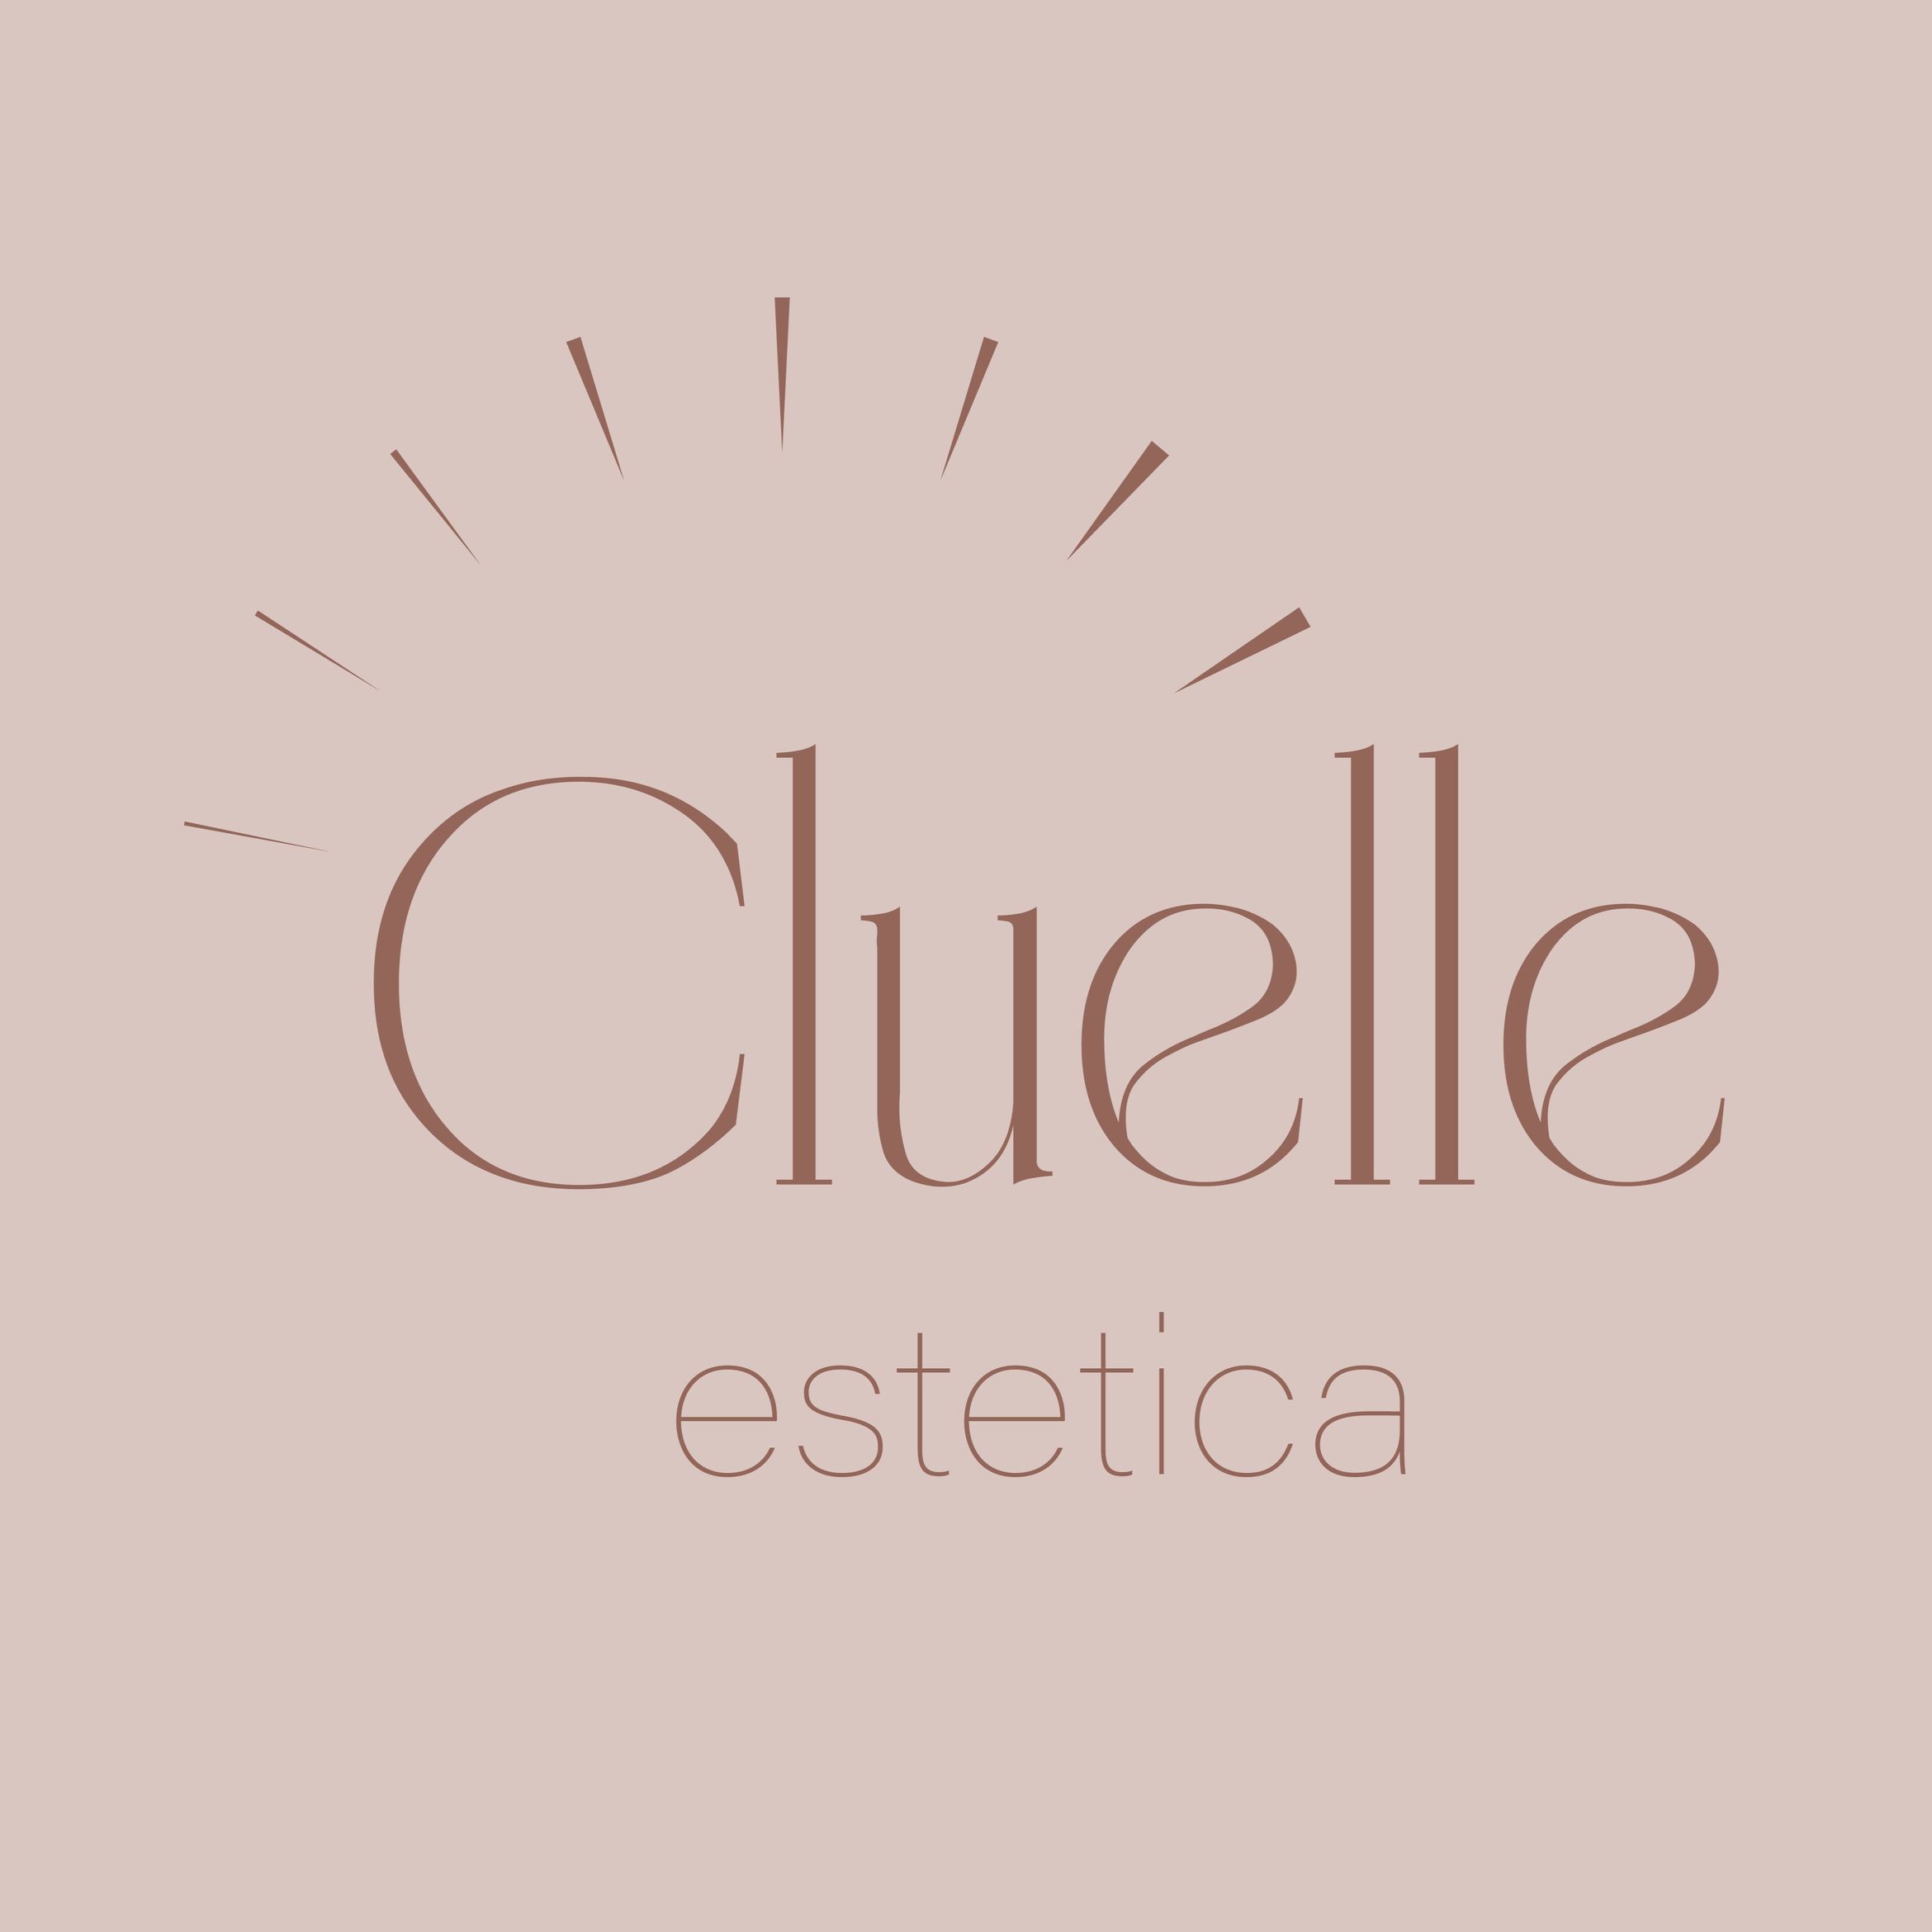 Cluelle Estetica, Rakowska 5, Lok 89 (Klatka 1, pomiędzy atelier fryzjerskim a weterynarzem, 8 piętro), 02-237, Warszawa, Włochy